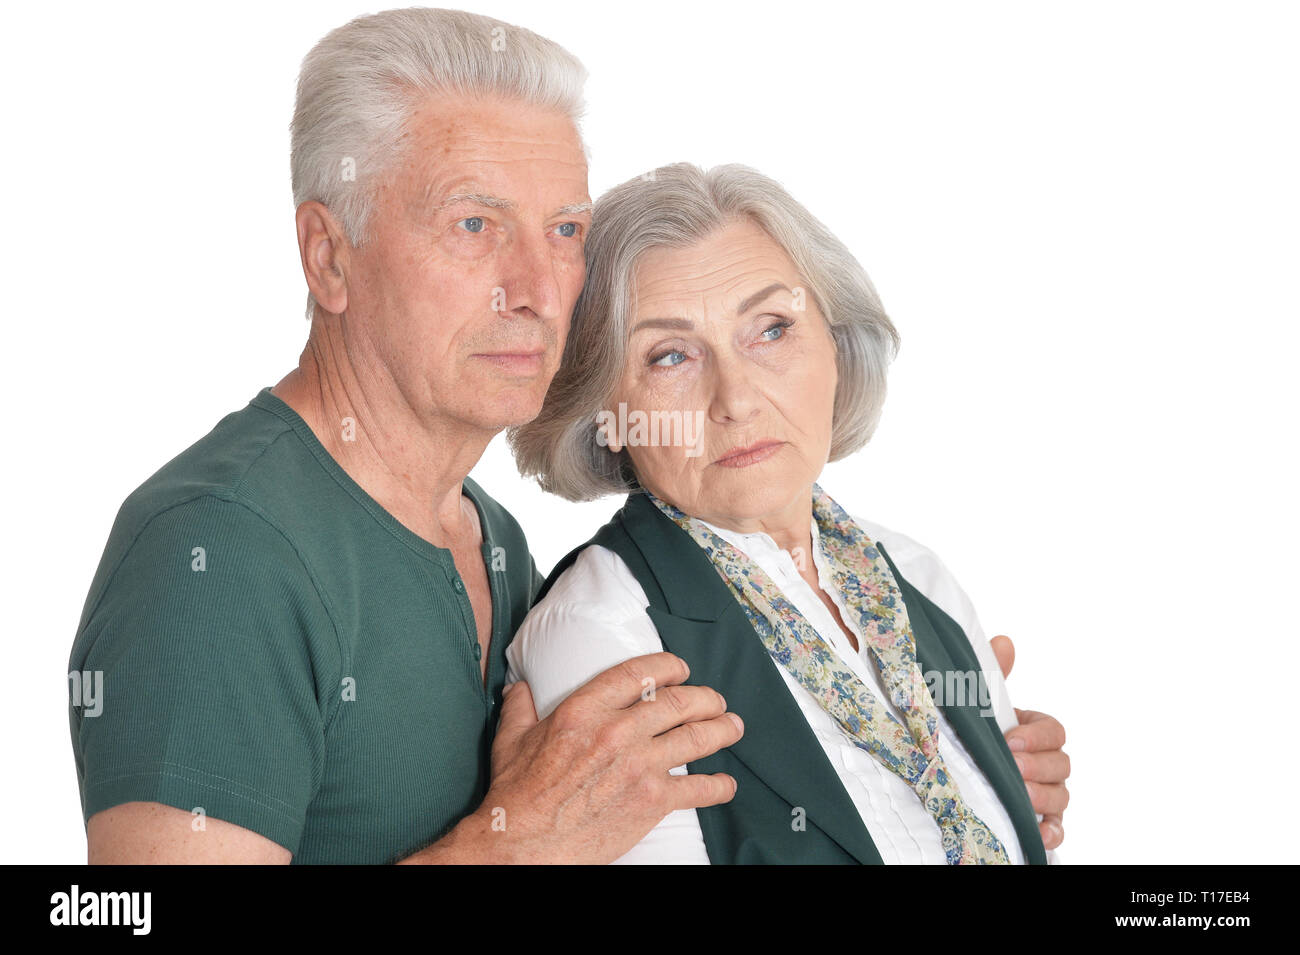 Portrait of thinking senior couple on white background Stock Photo